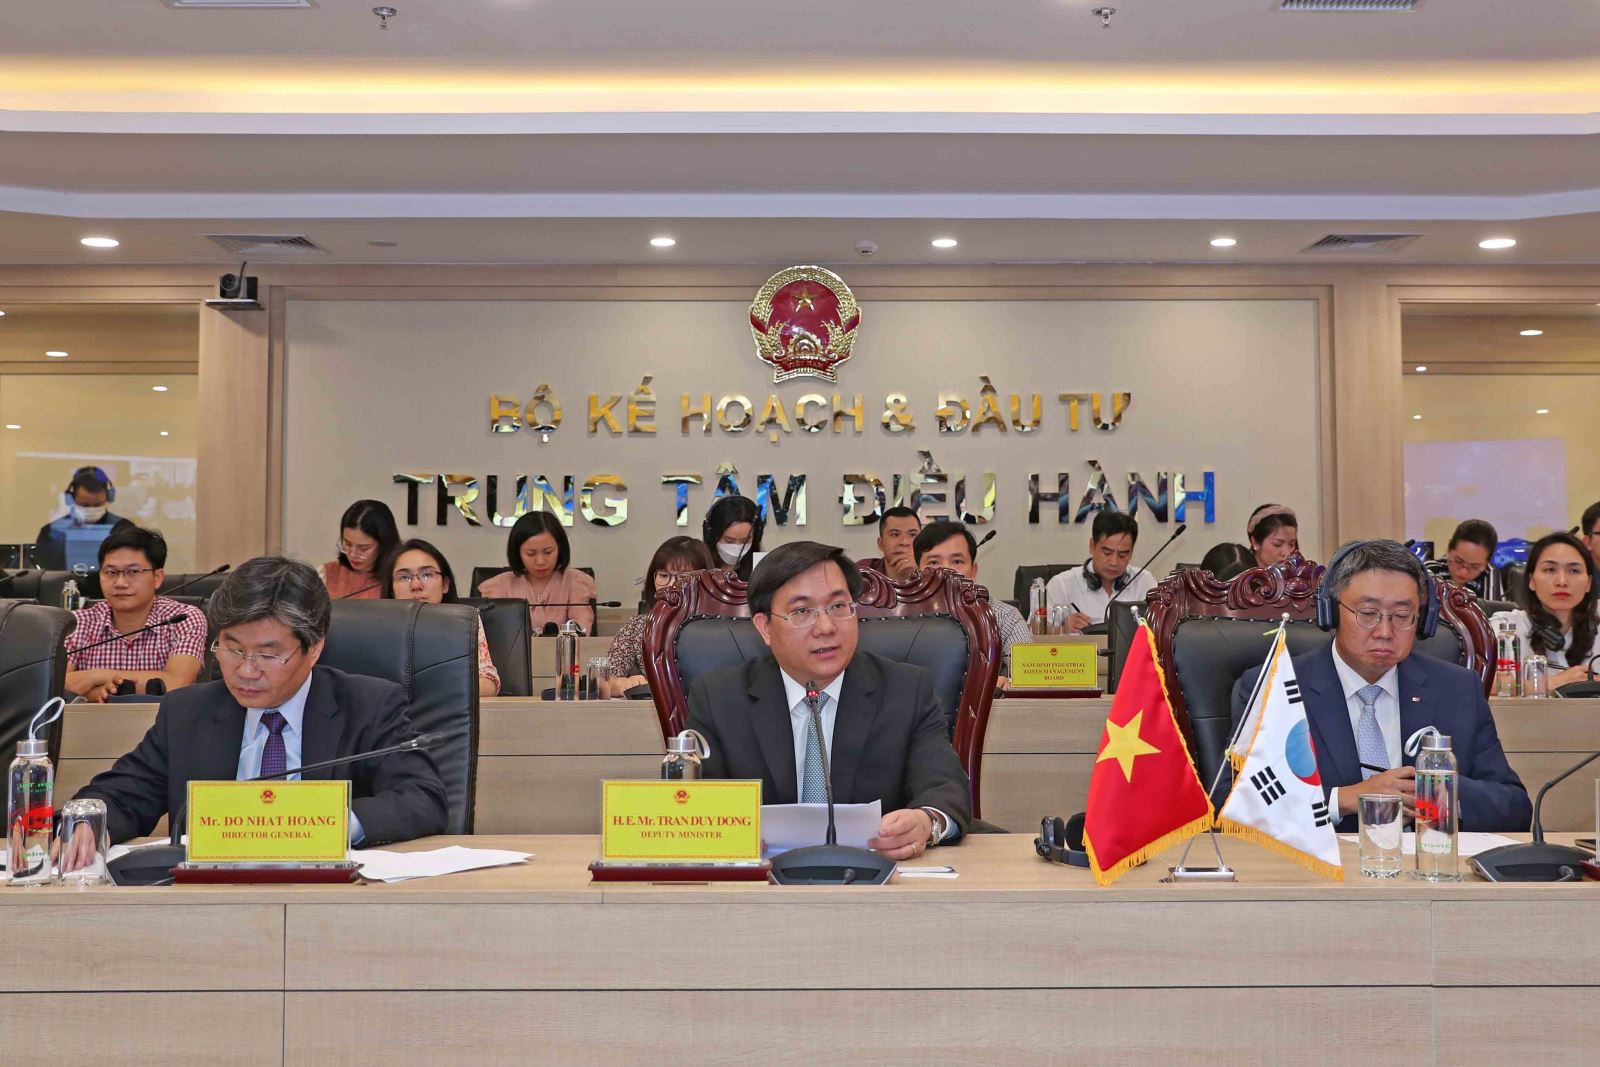 Hội thảo Đầu tư Kinh doanh trực tuyến Việt Nam - Hàn Quốc